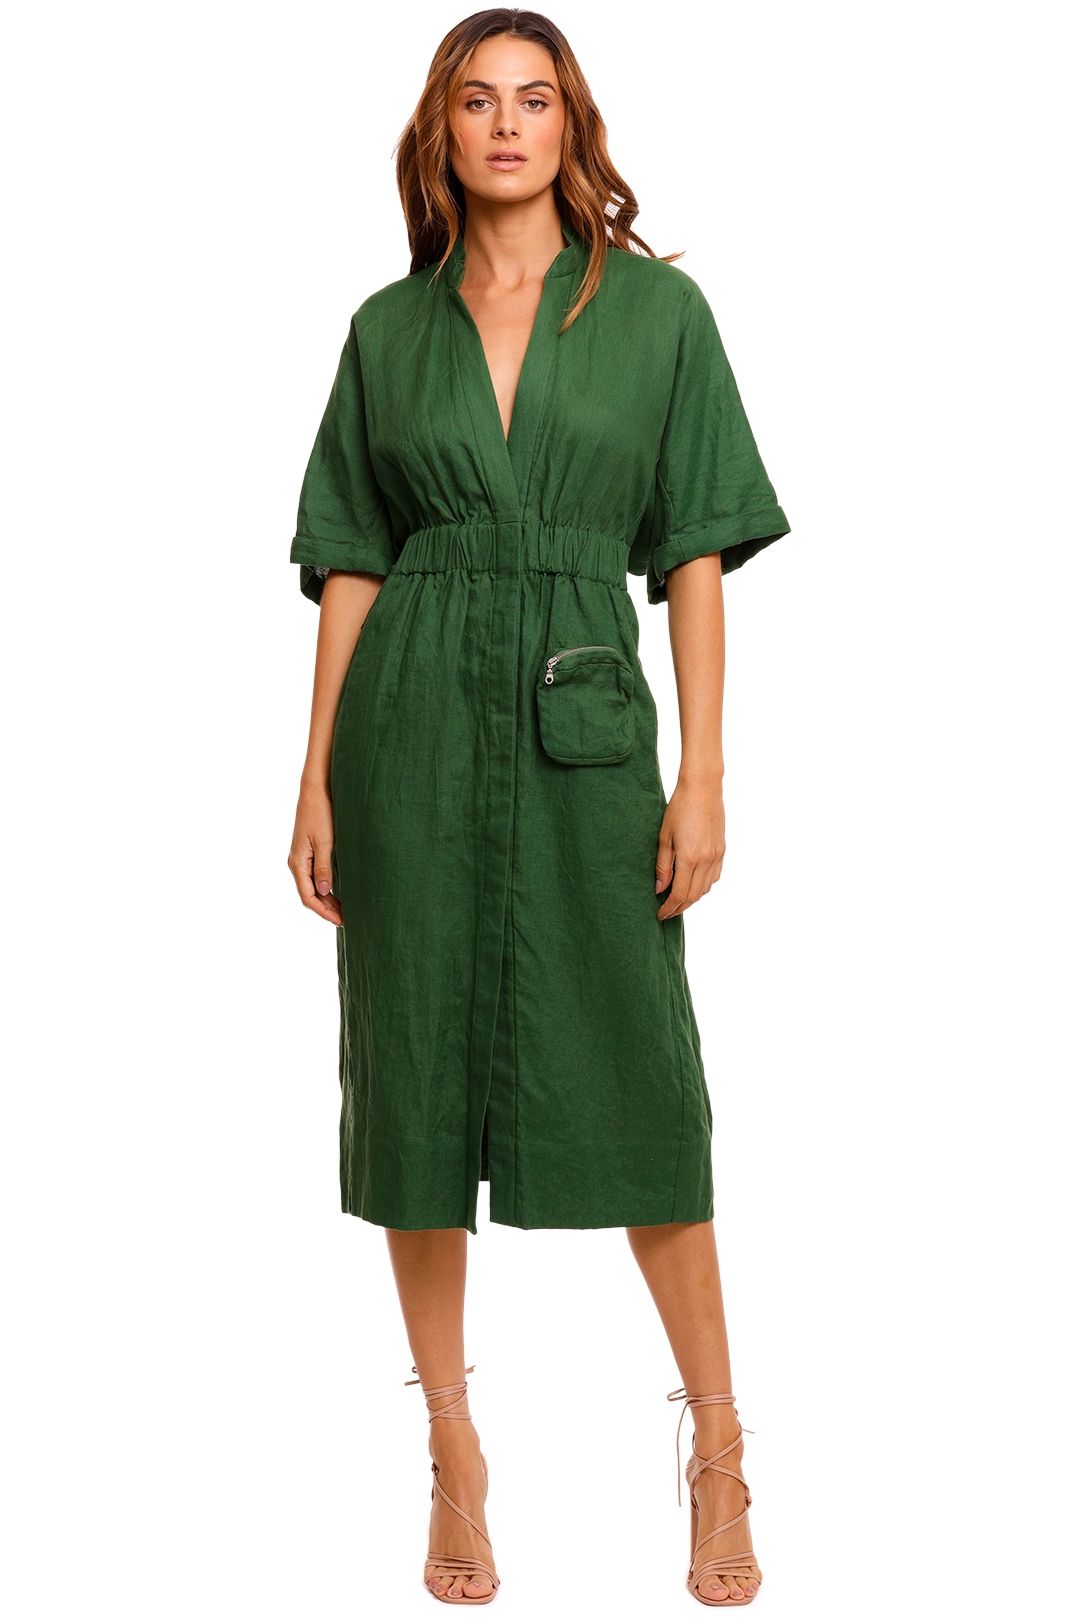 KITX Declaration Green Linen Shirt Dress half sleeve